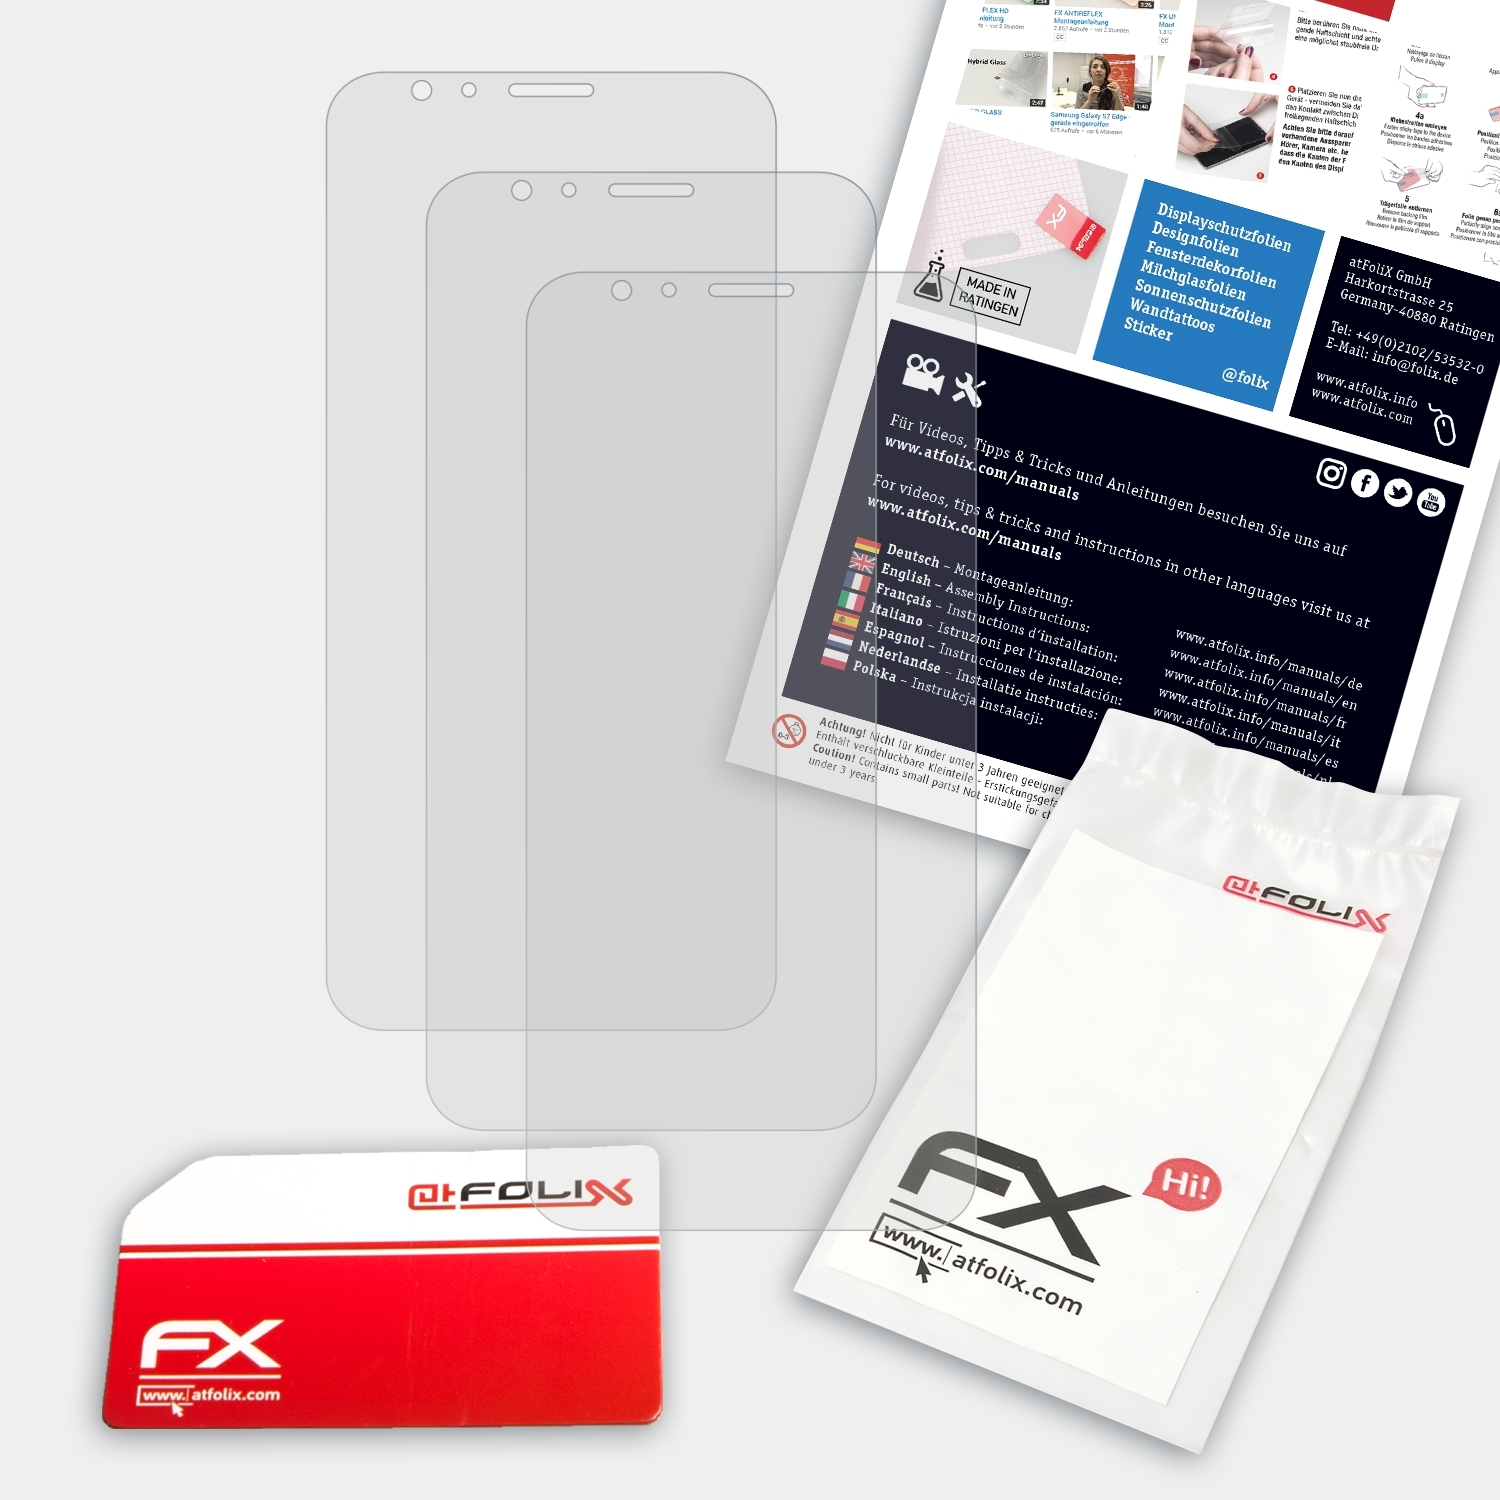 FX-Antireflex 3x Huawei (GX8)) ATFOLIX Displayschutz(für G8